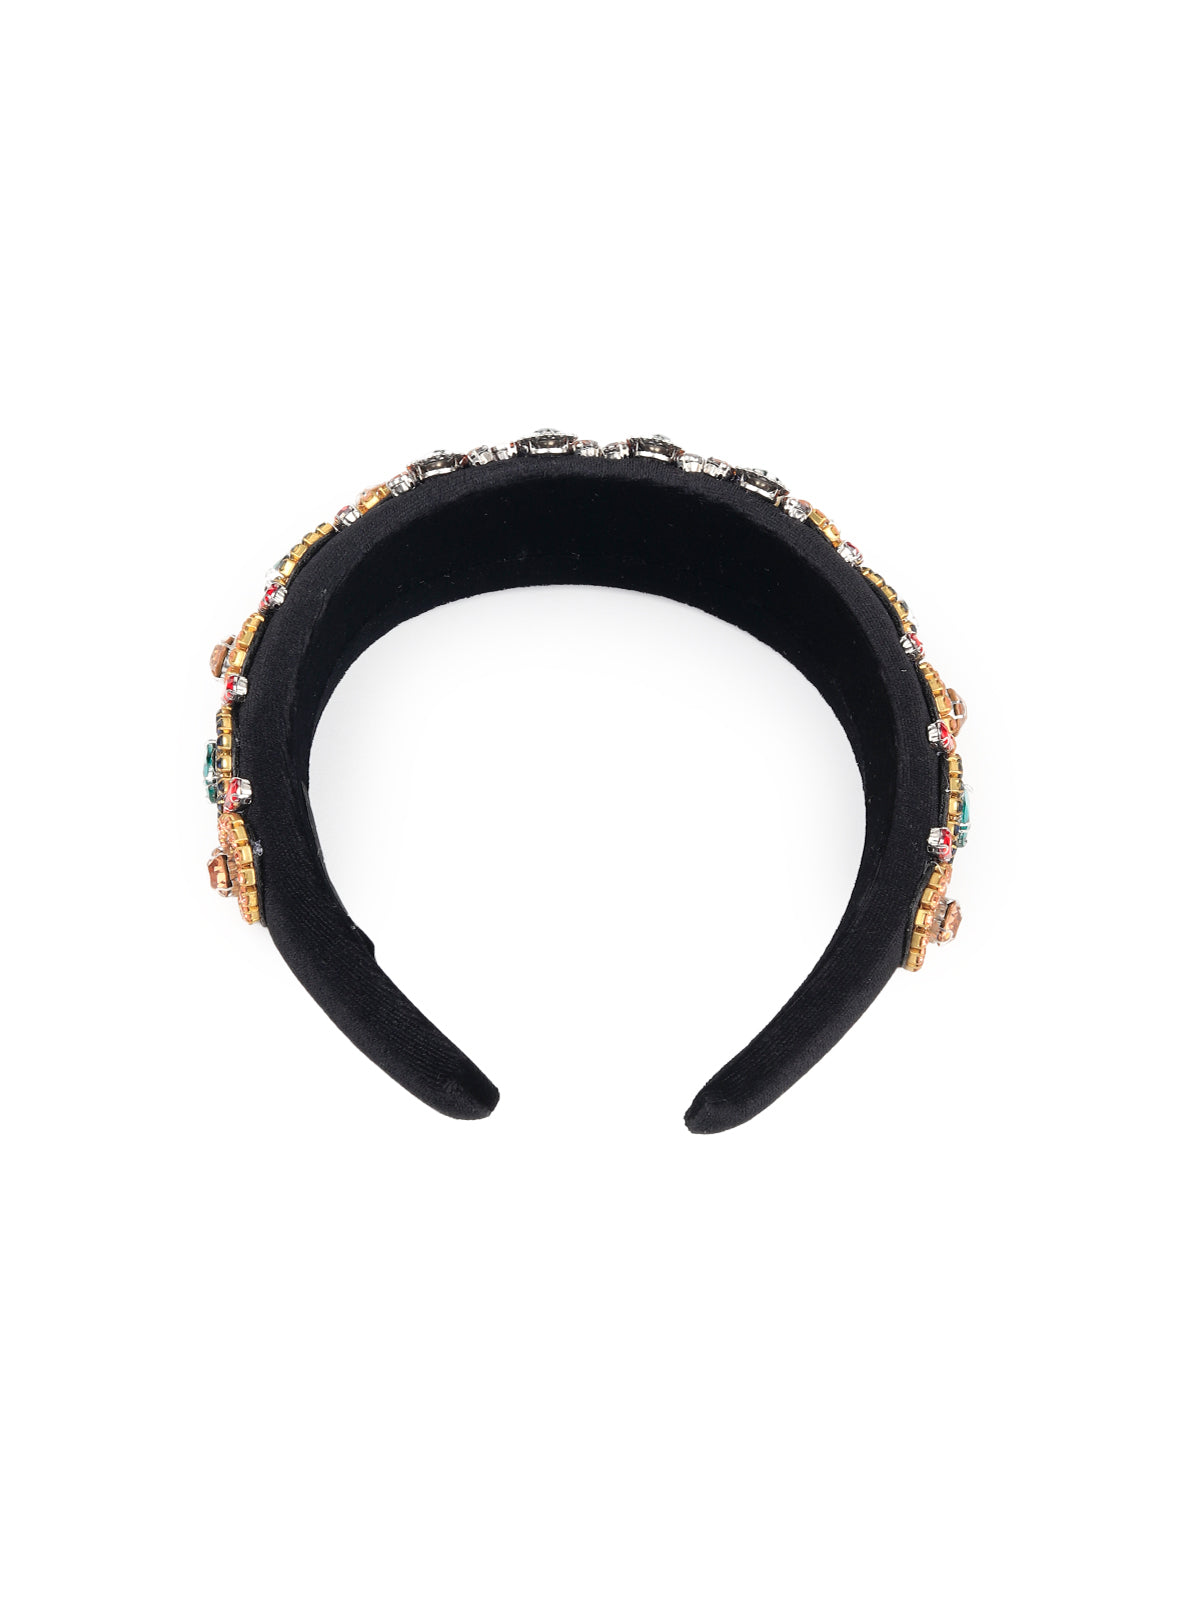 Odette - Multicolor Embellished Hairband